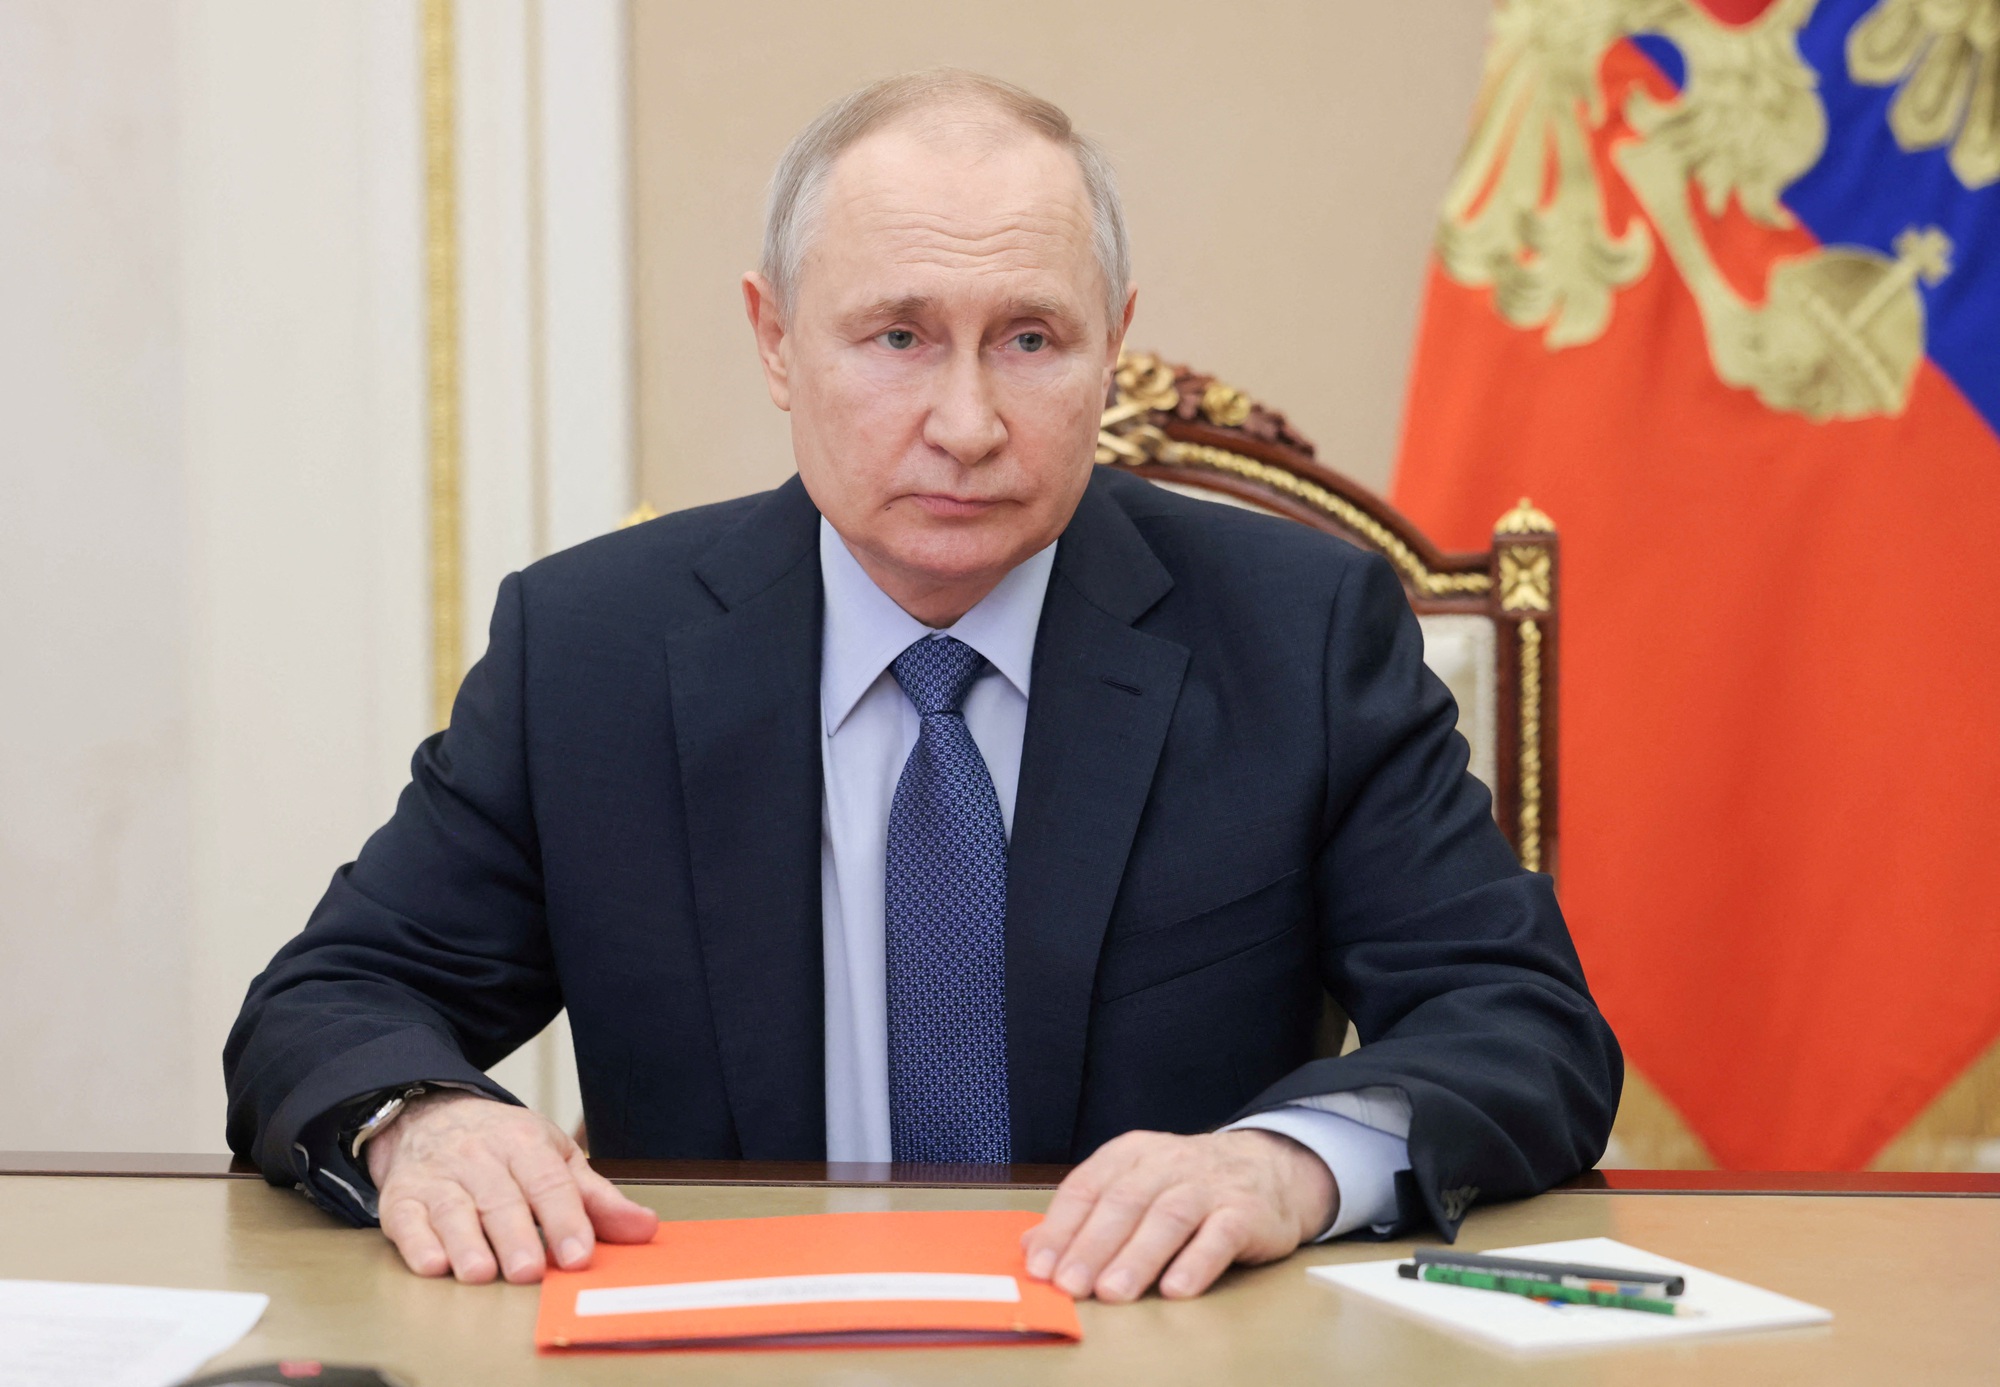 Nga lên án lệnh bắt Tổng thống Putin do tòa quốc tế ban hành - Ảnh 1.